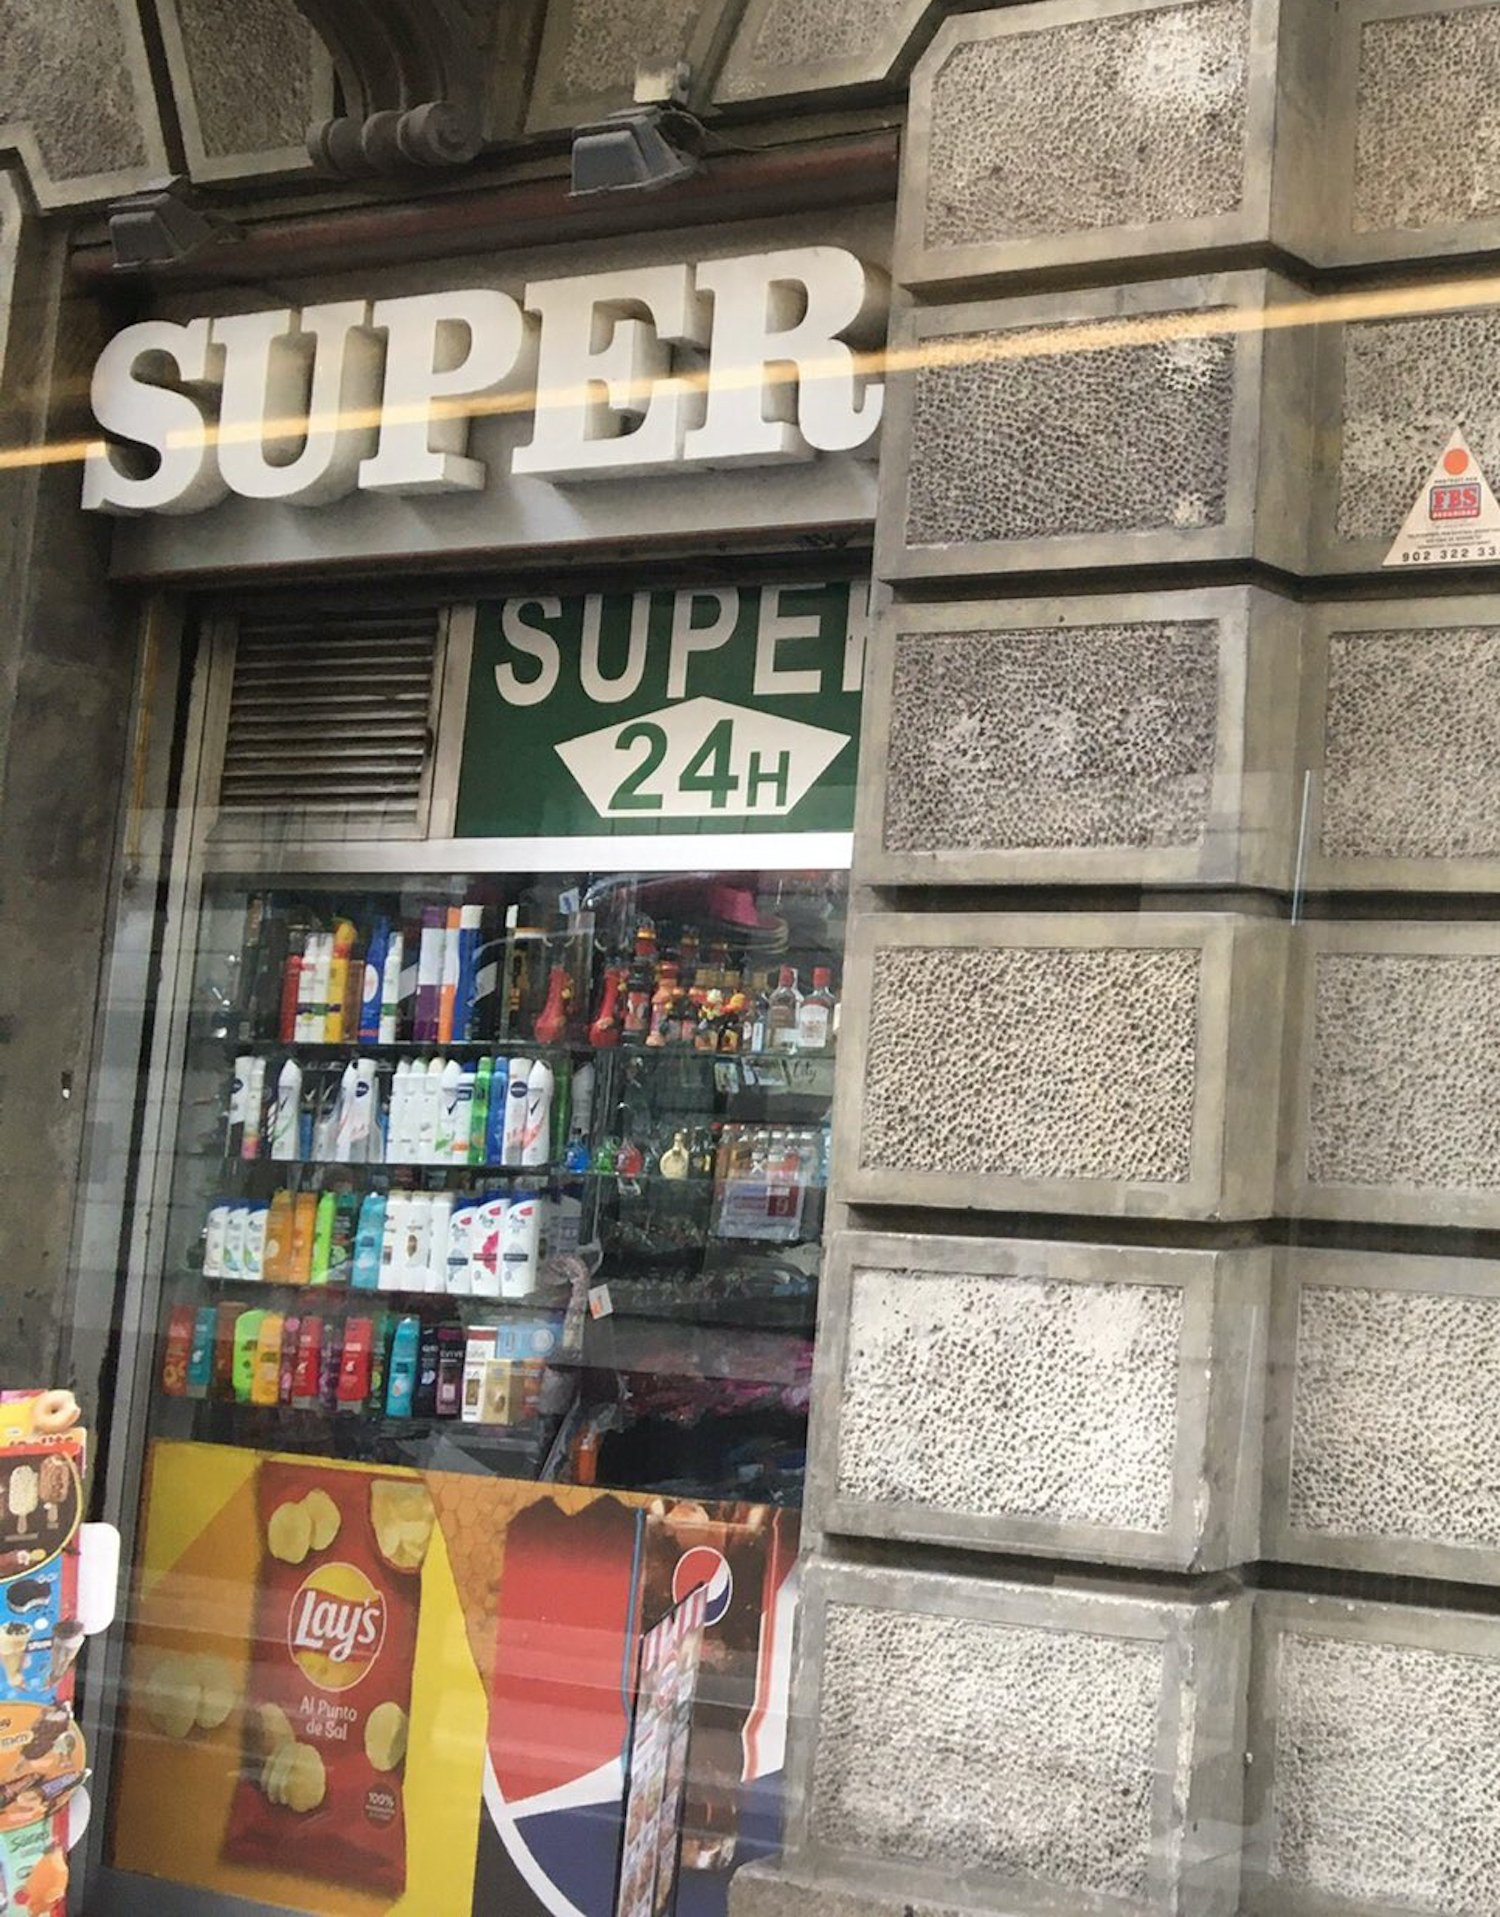 Troballa en un establiment de Barcelona: cartell delirant. "Bah, ningú ho notarà"